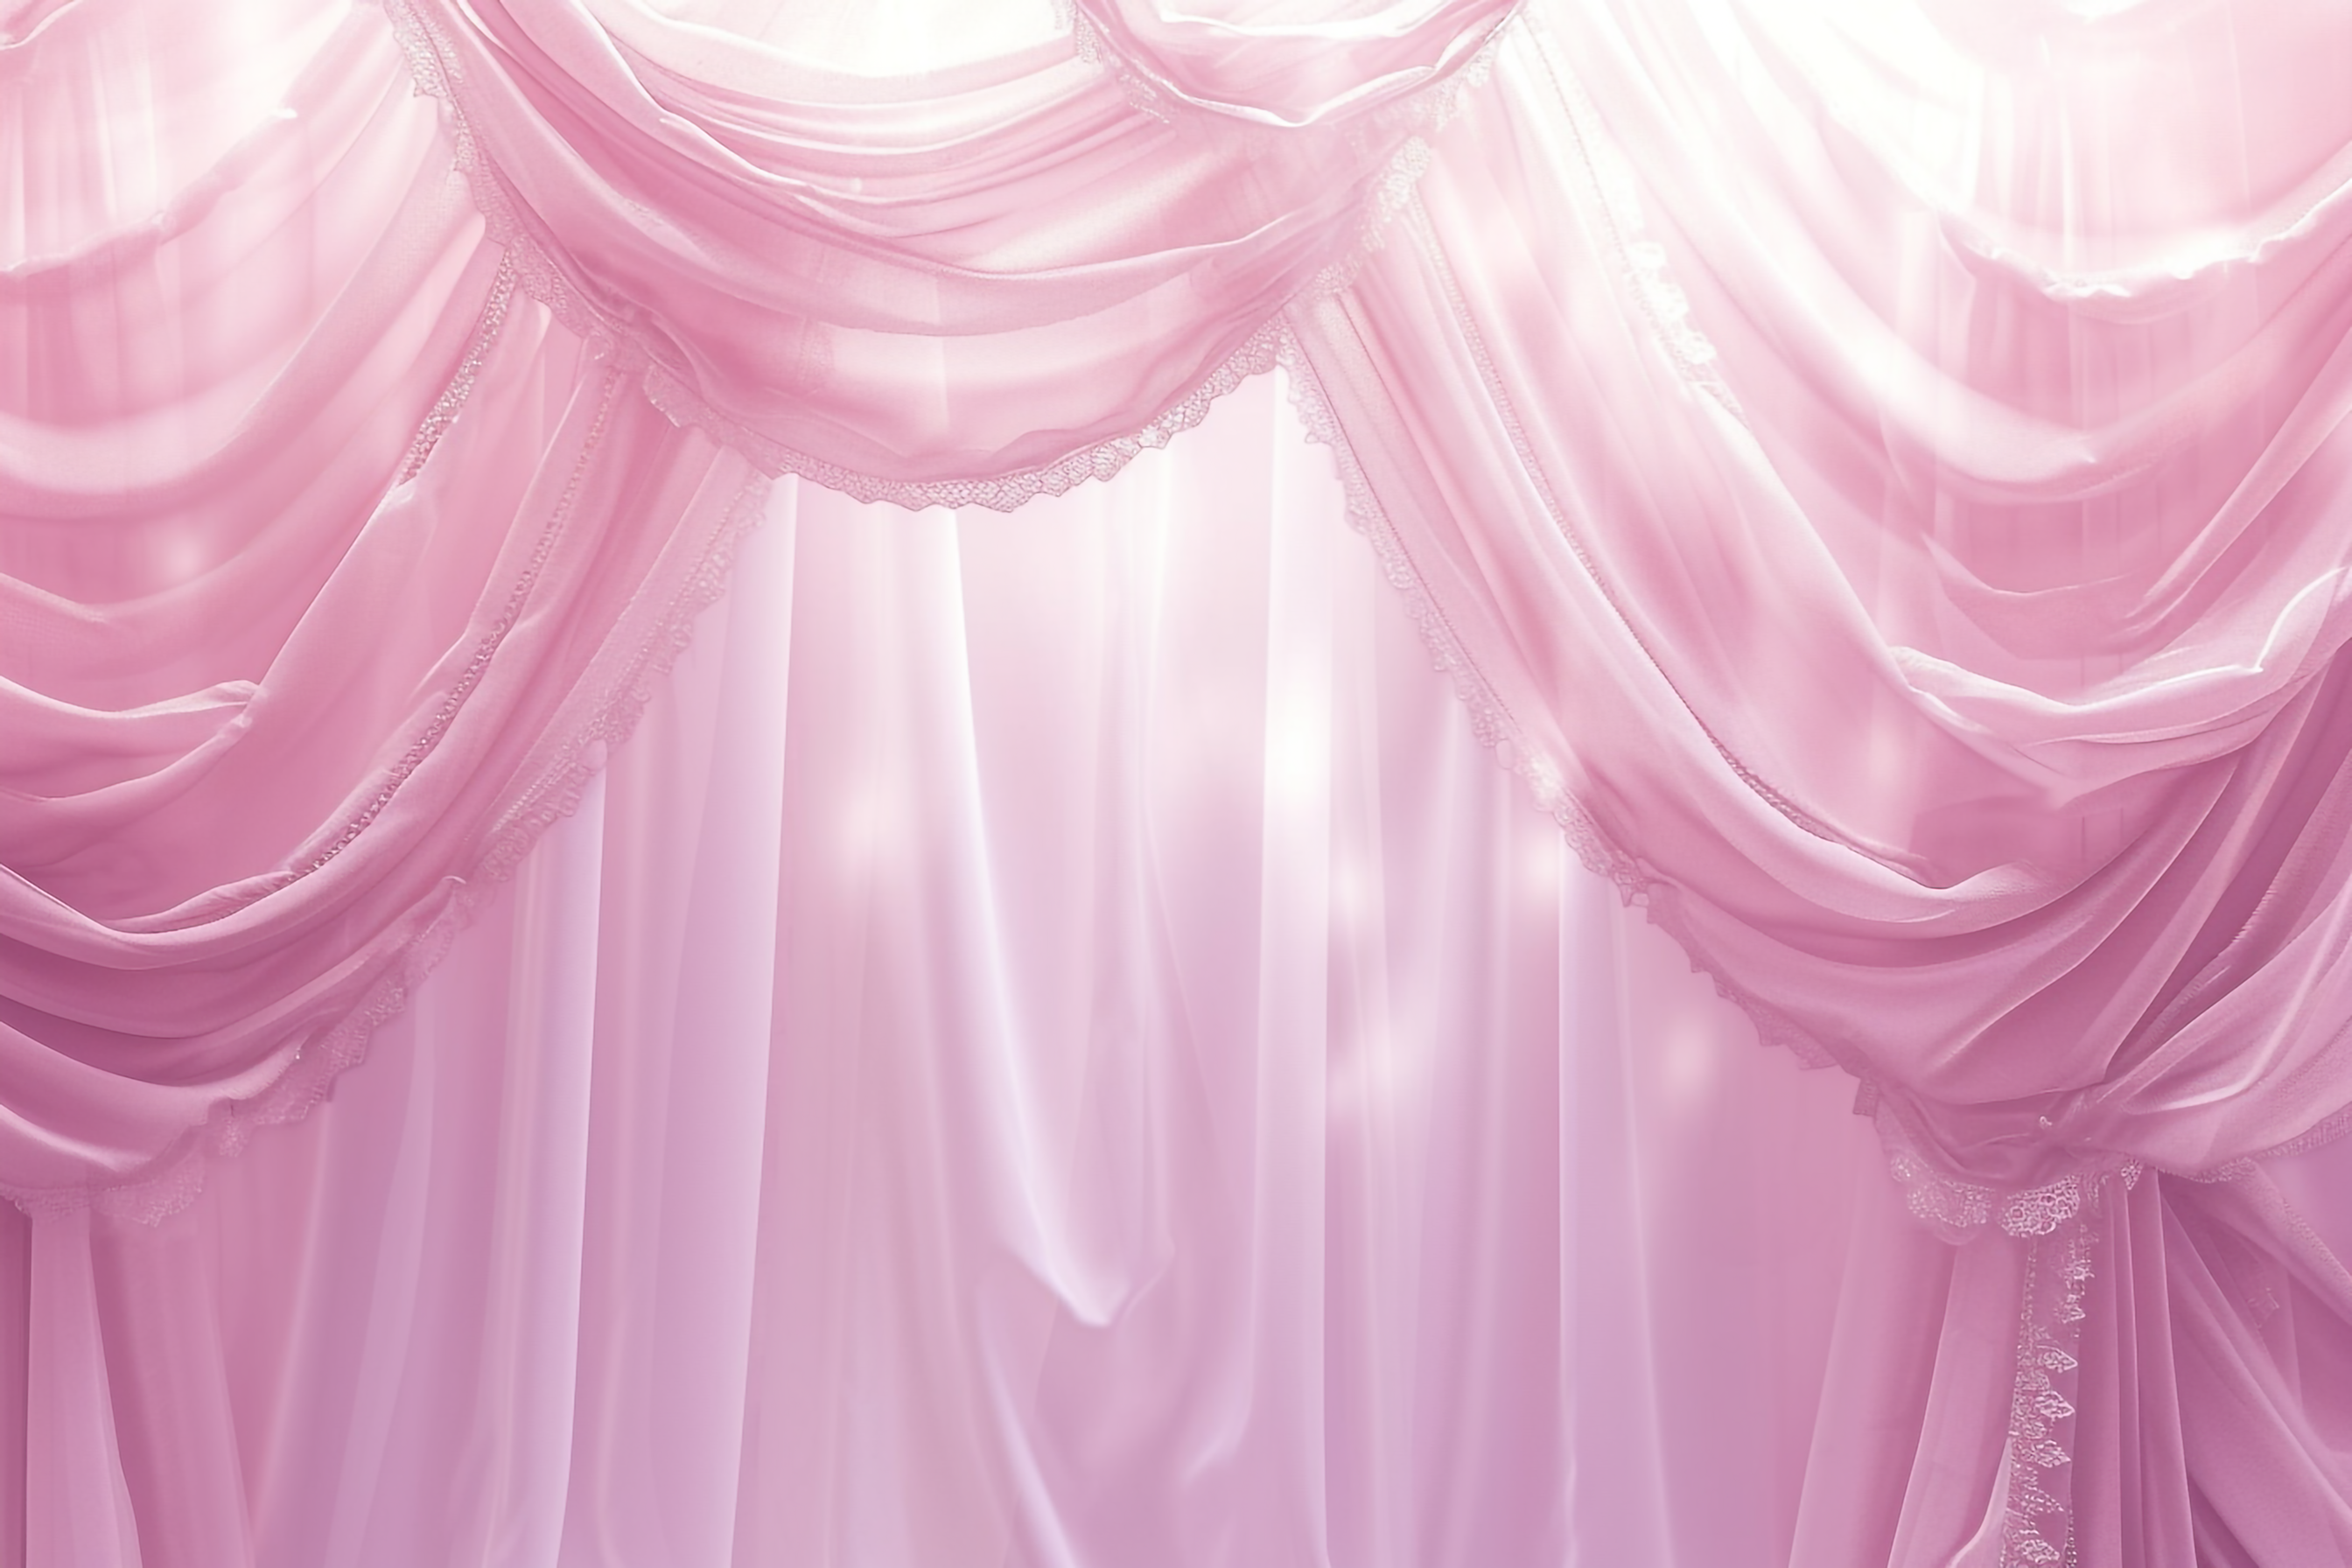 背景用のパステルピンクのカーテン